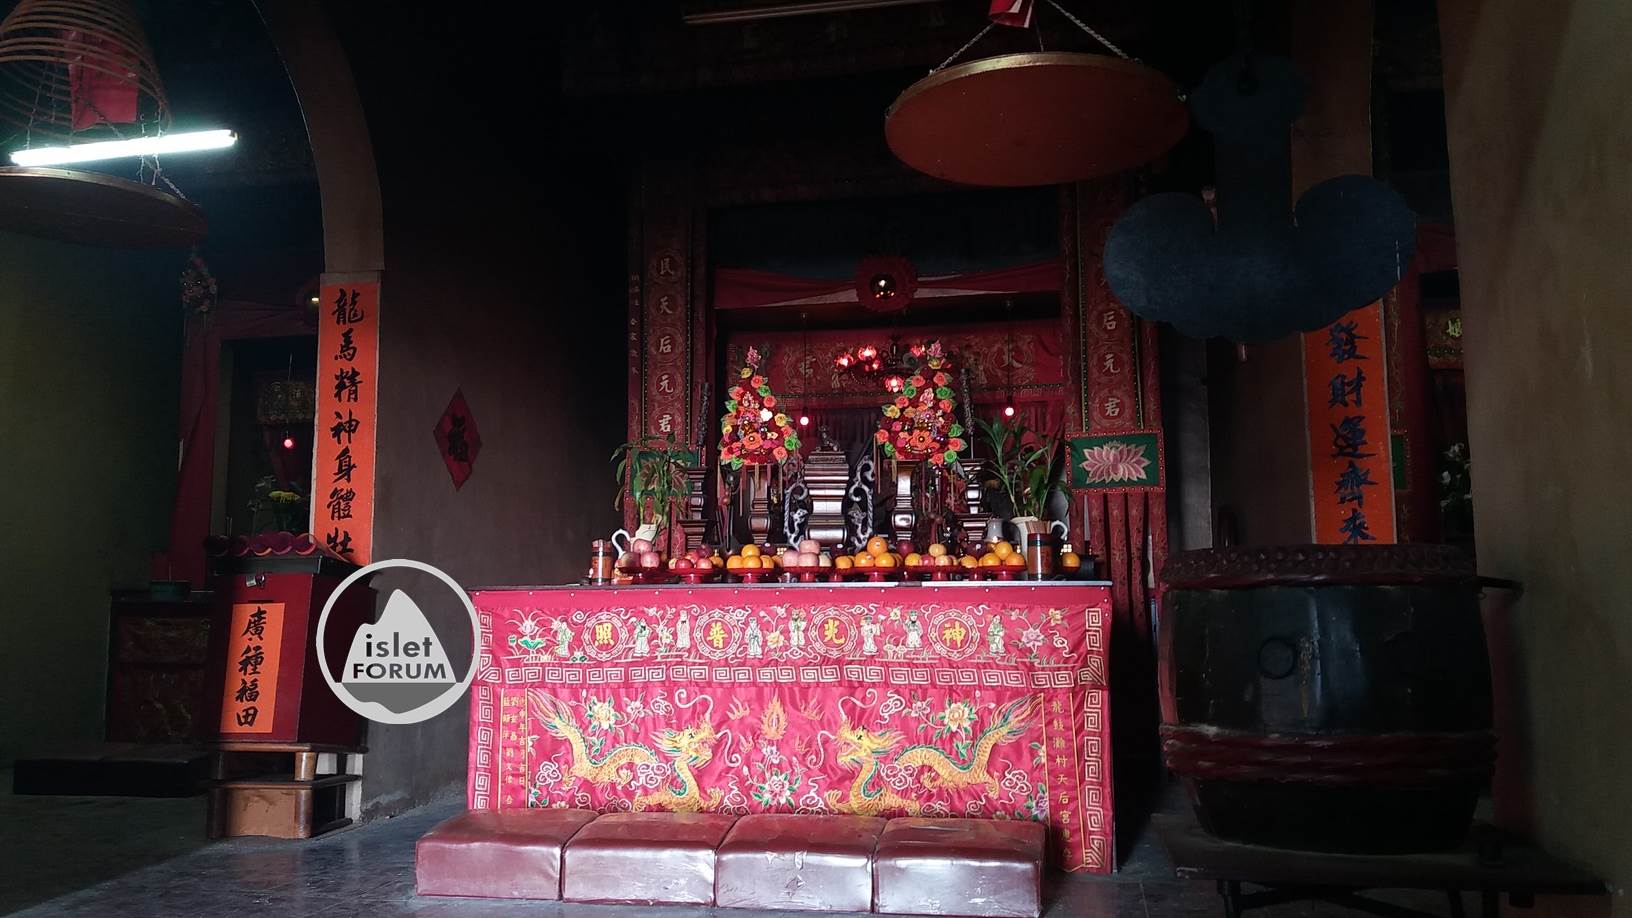 龍鼓灘天后廟lung kwu tan tin hau temple (14).jpg